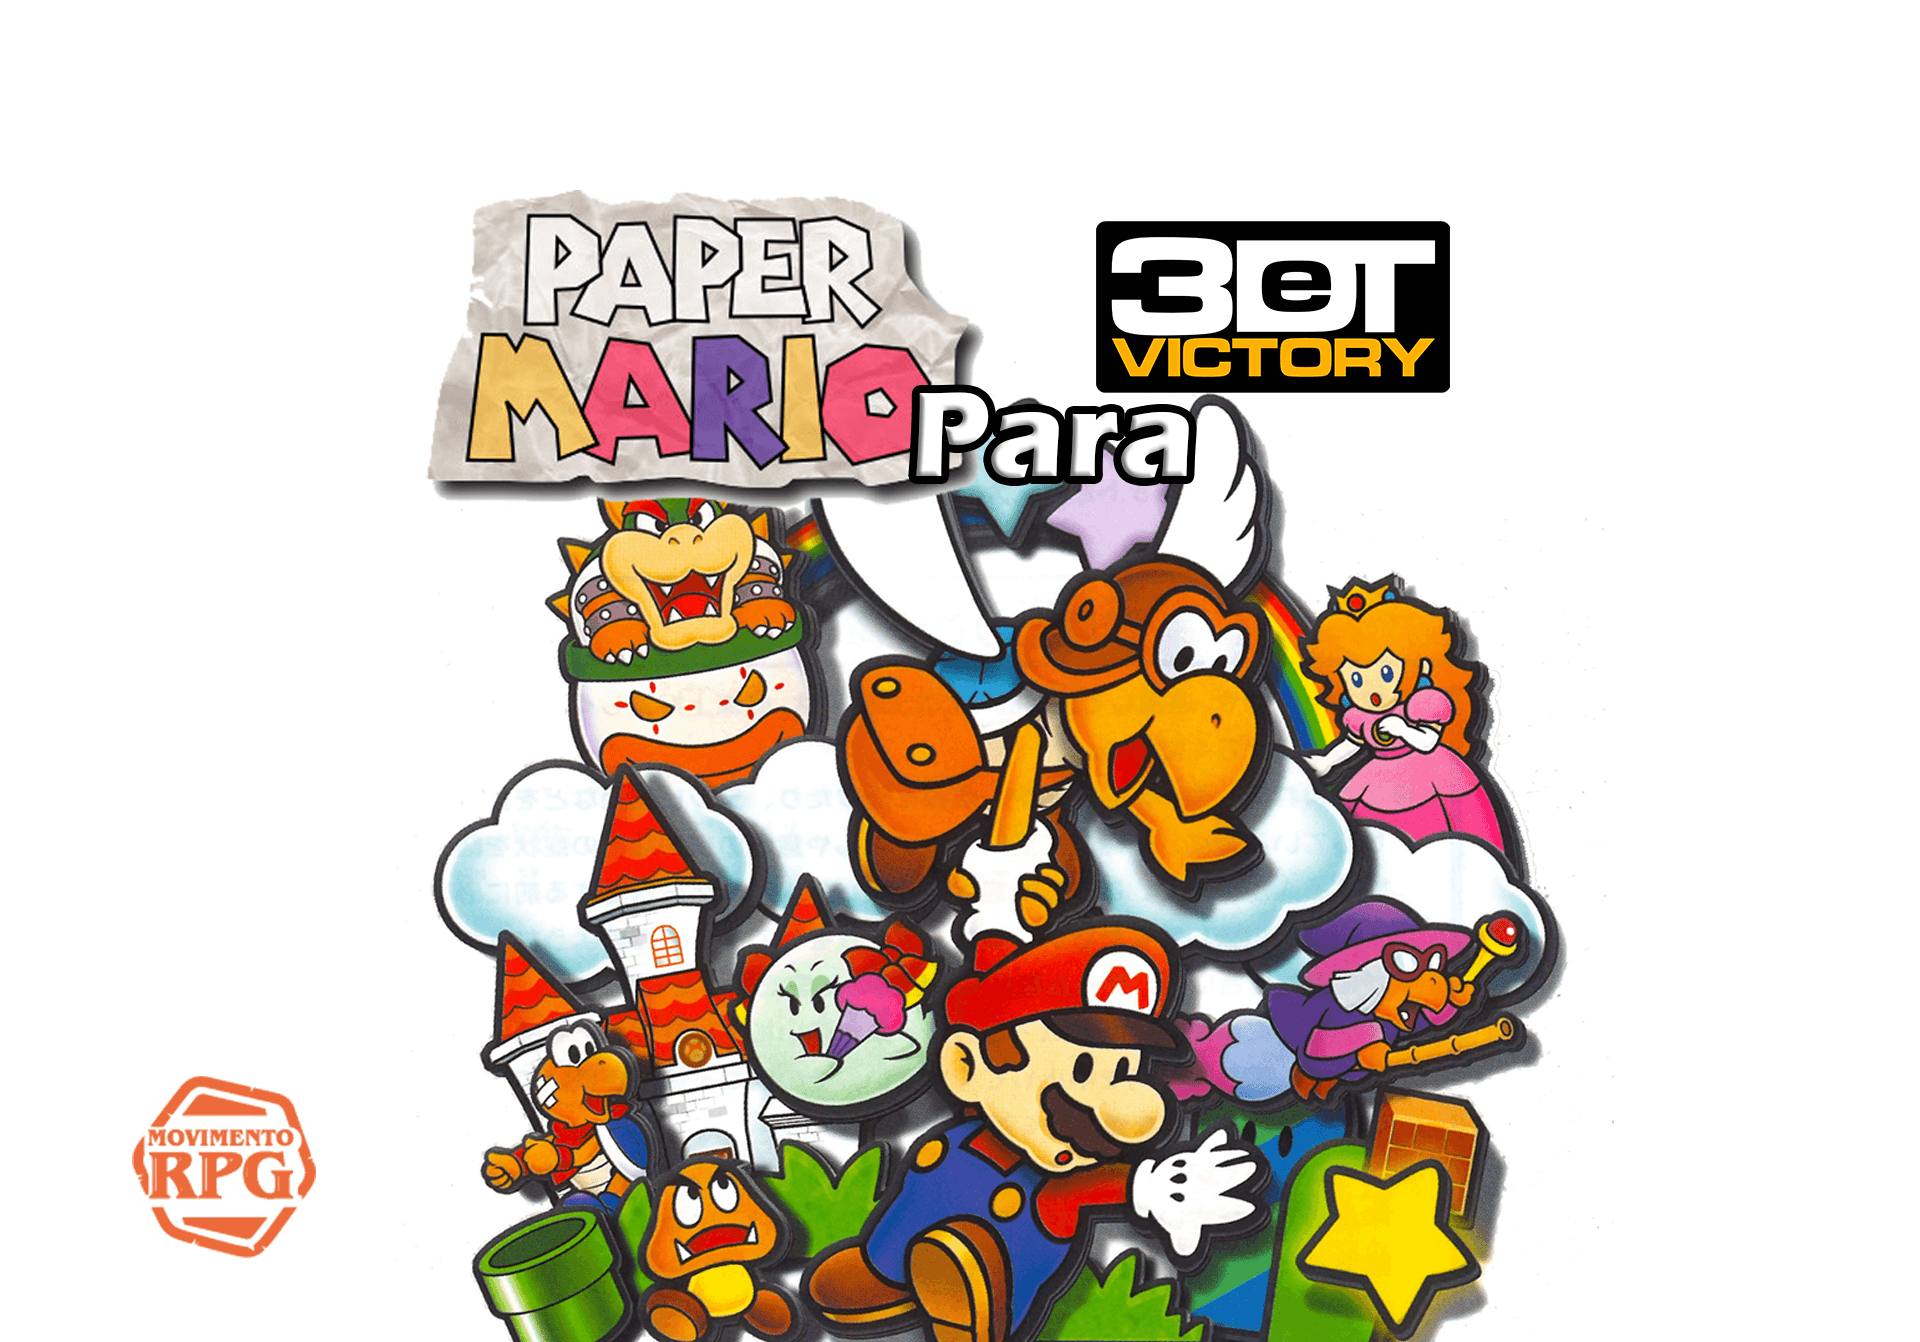 Paper Mario 64 para 3DeT Victory